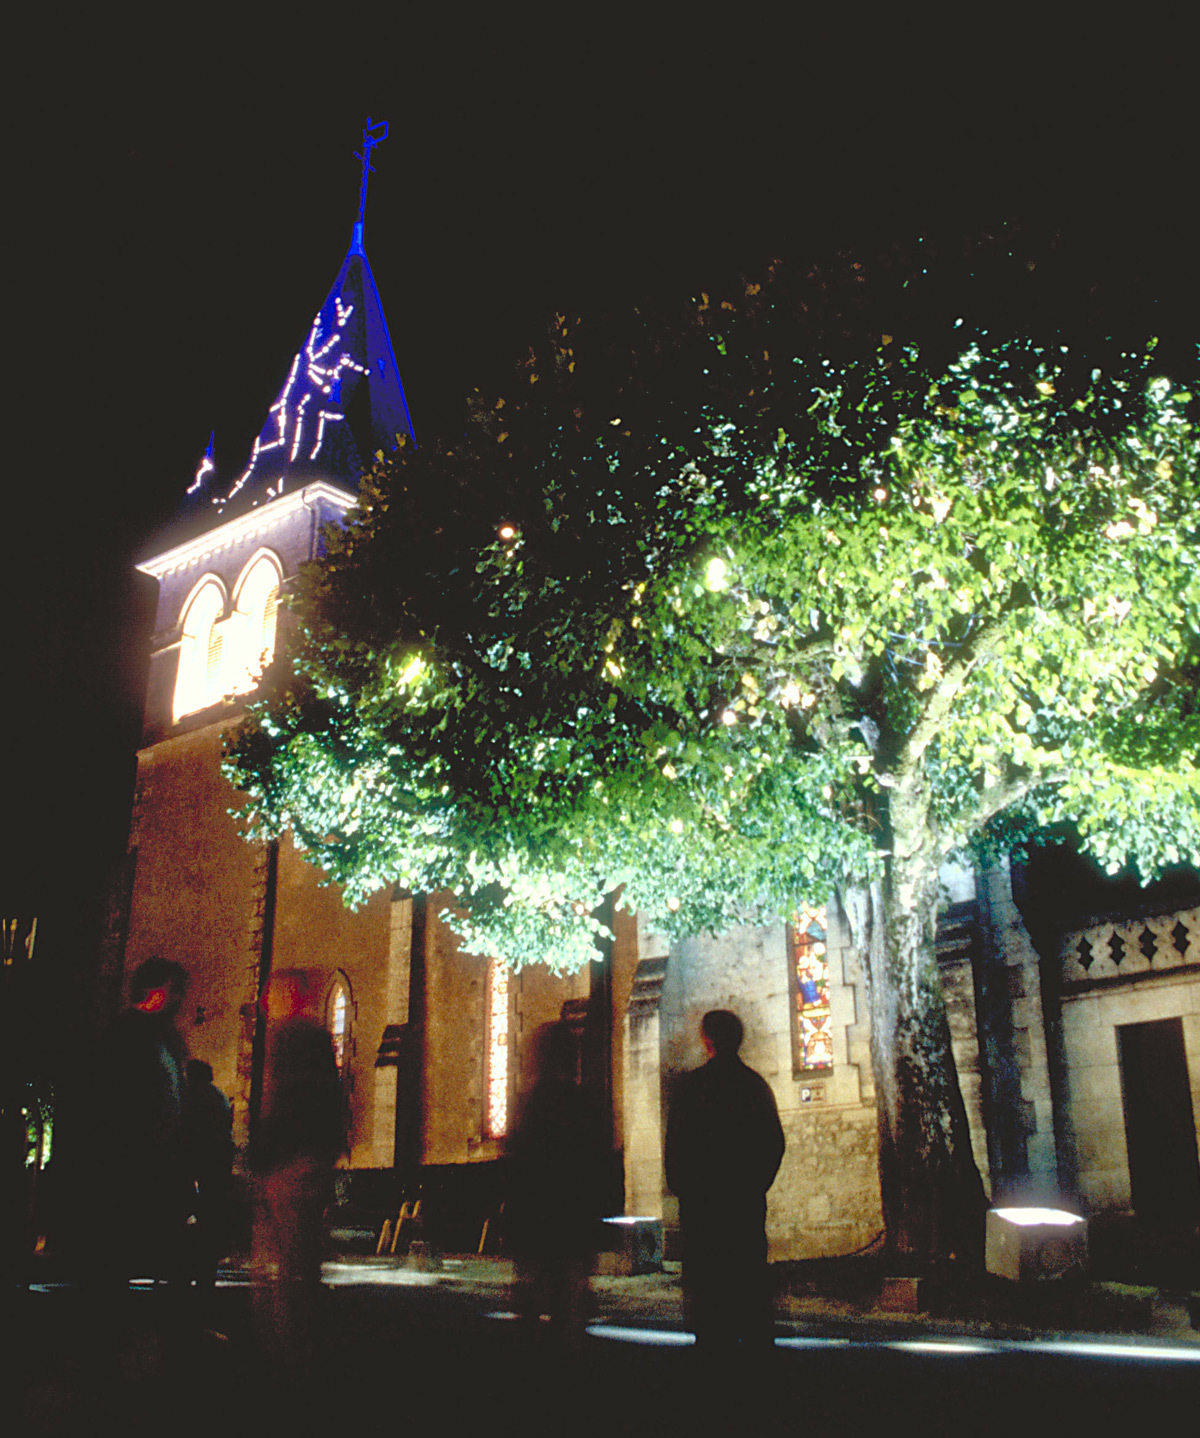 Vue d’ensemble - Lumière(s) en usage - Bourg de Champcevinel, Dordogne – Conception lumière : Anne Bureau et Stephane Carratero - 17 au 20 septembre 1998 - Photo : Vincent Laganier